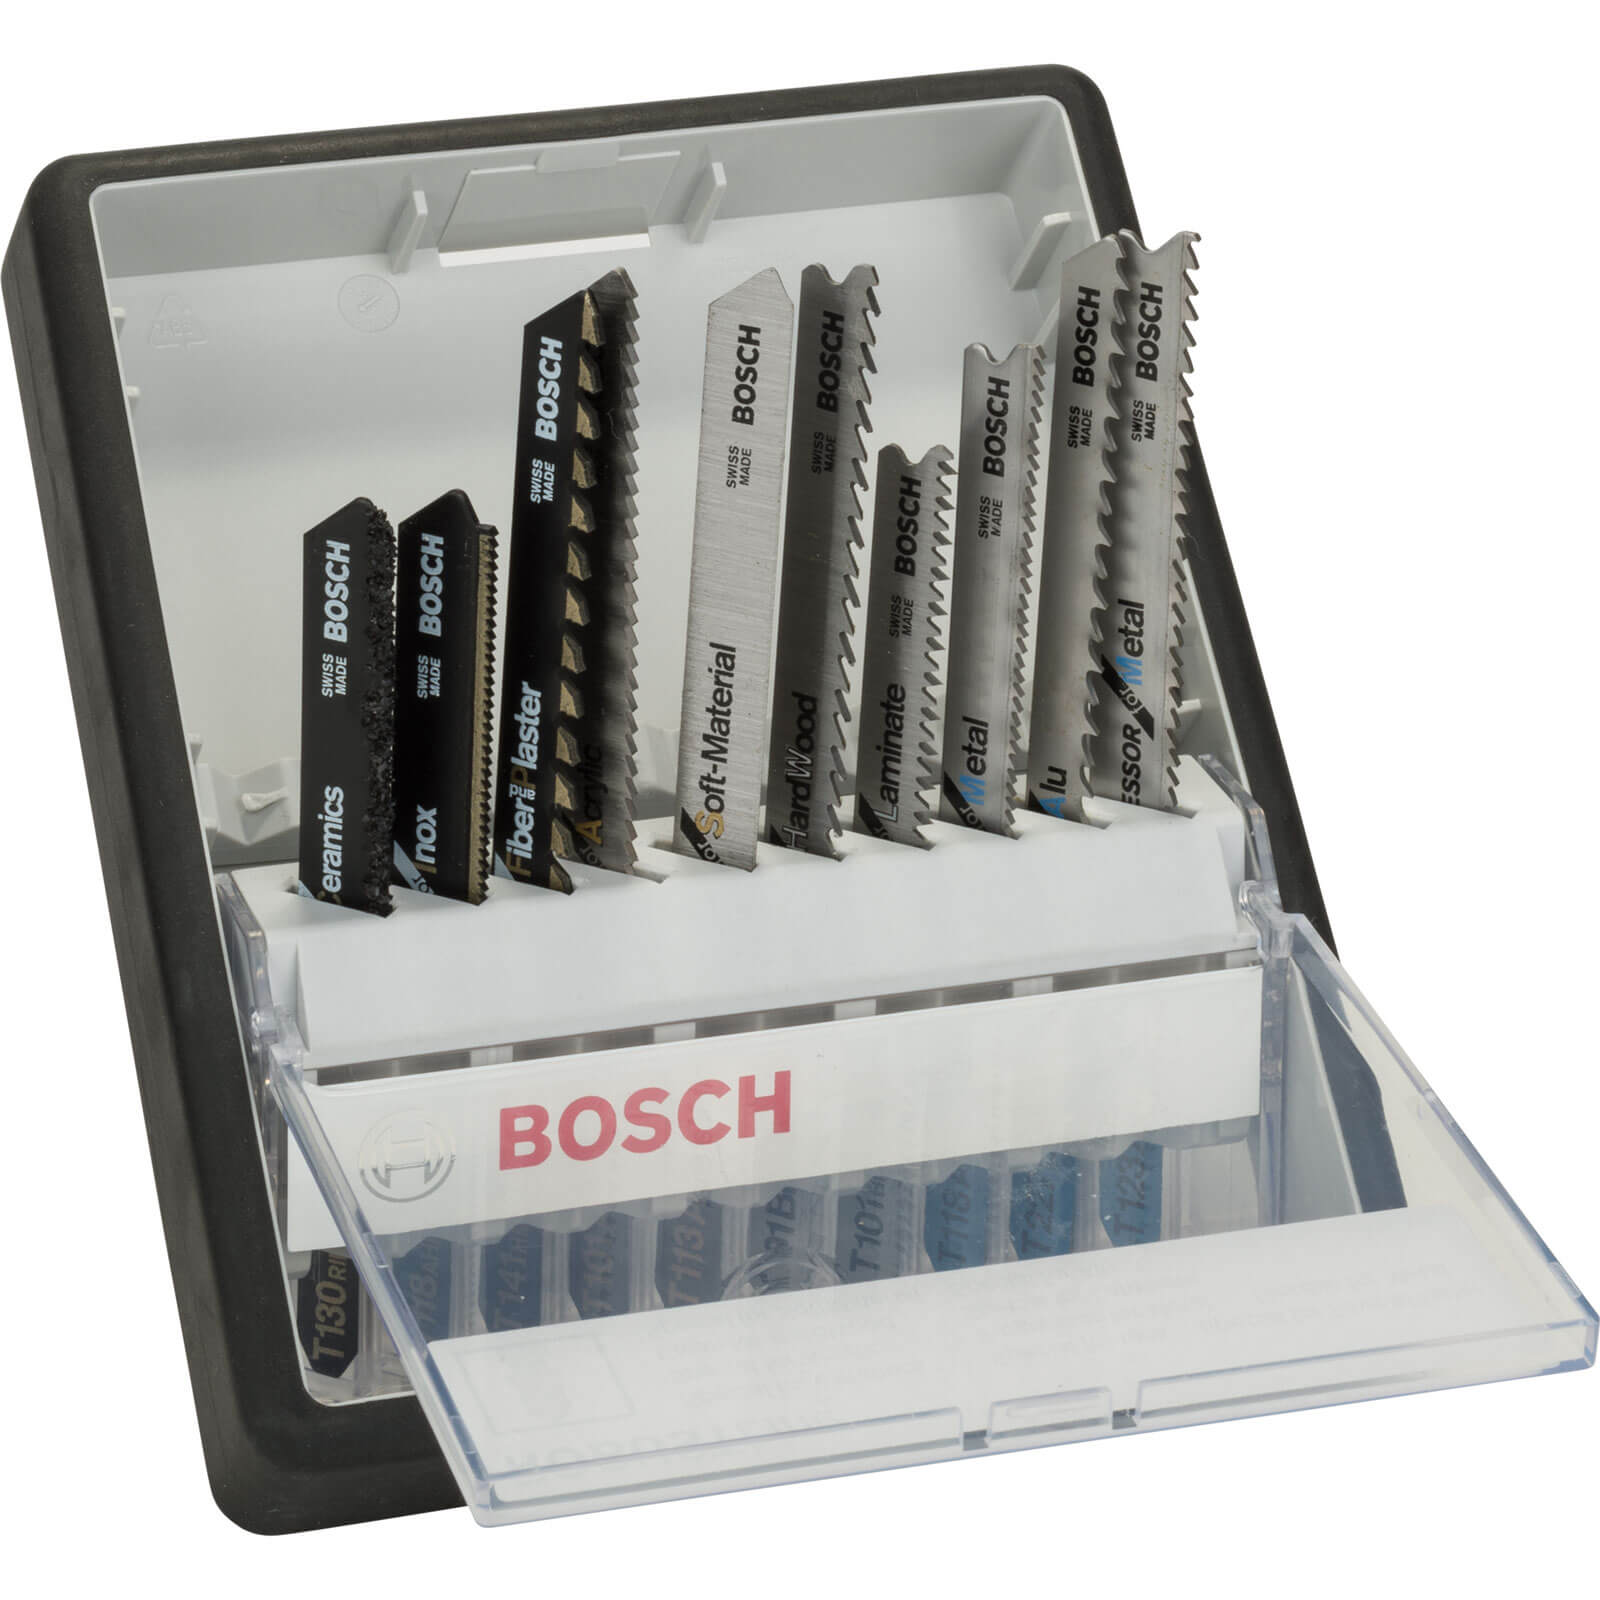 Image of Bosch 10 Piece Jigsaw Blade Set